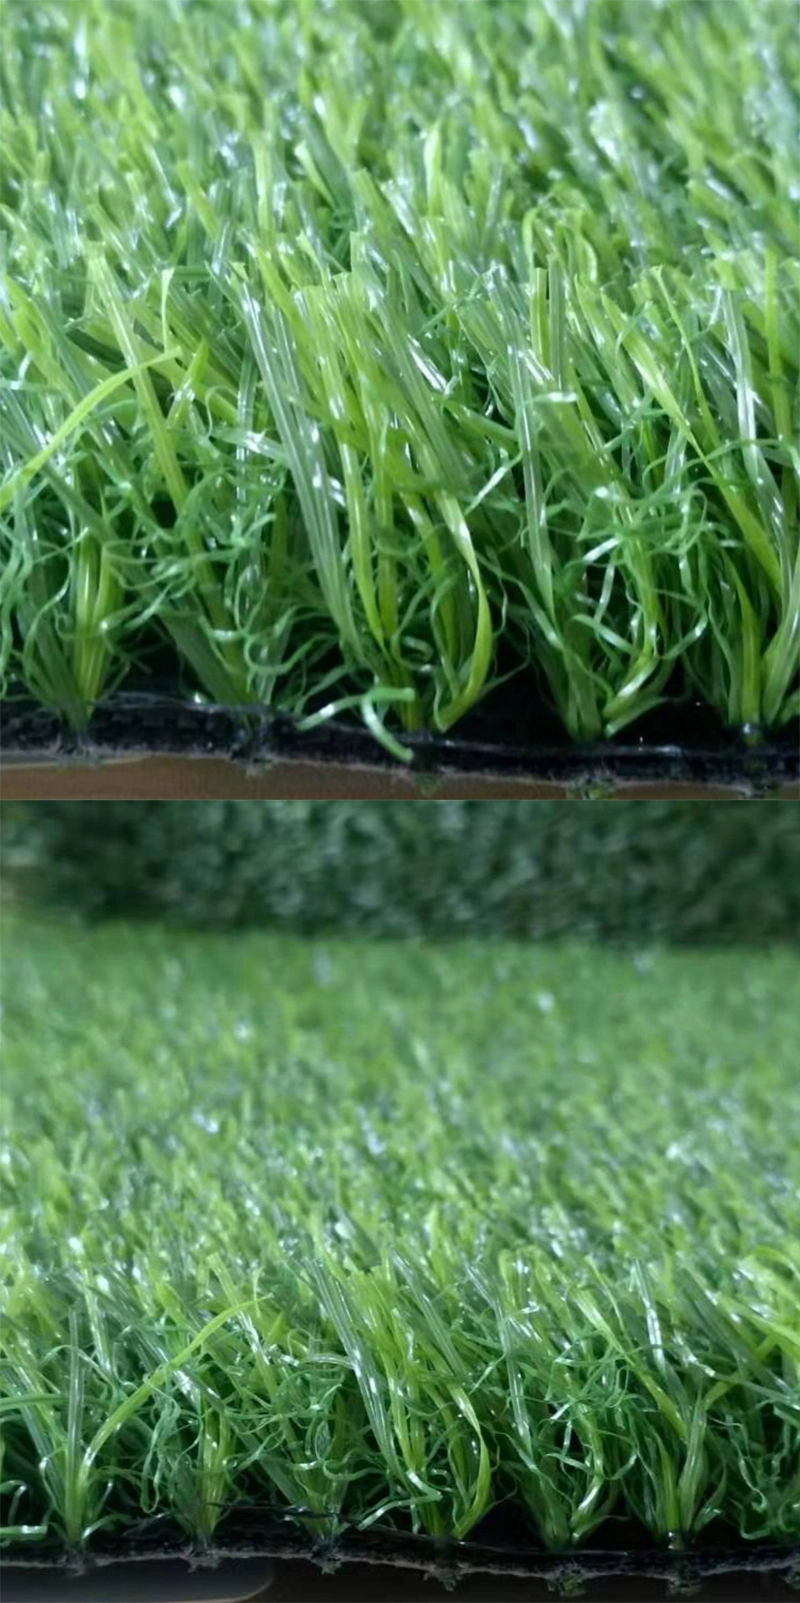 High Performance Artificial Grass for Tennis Court